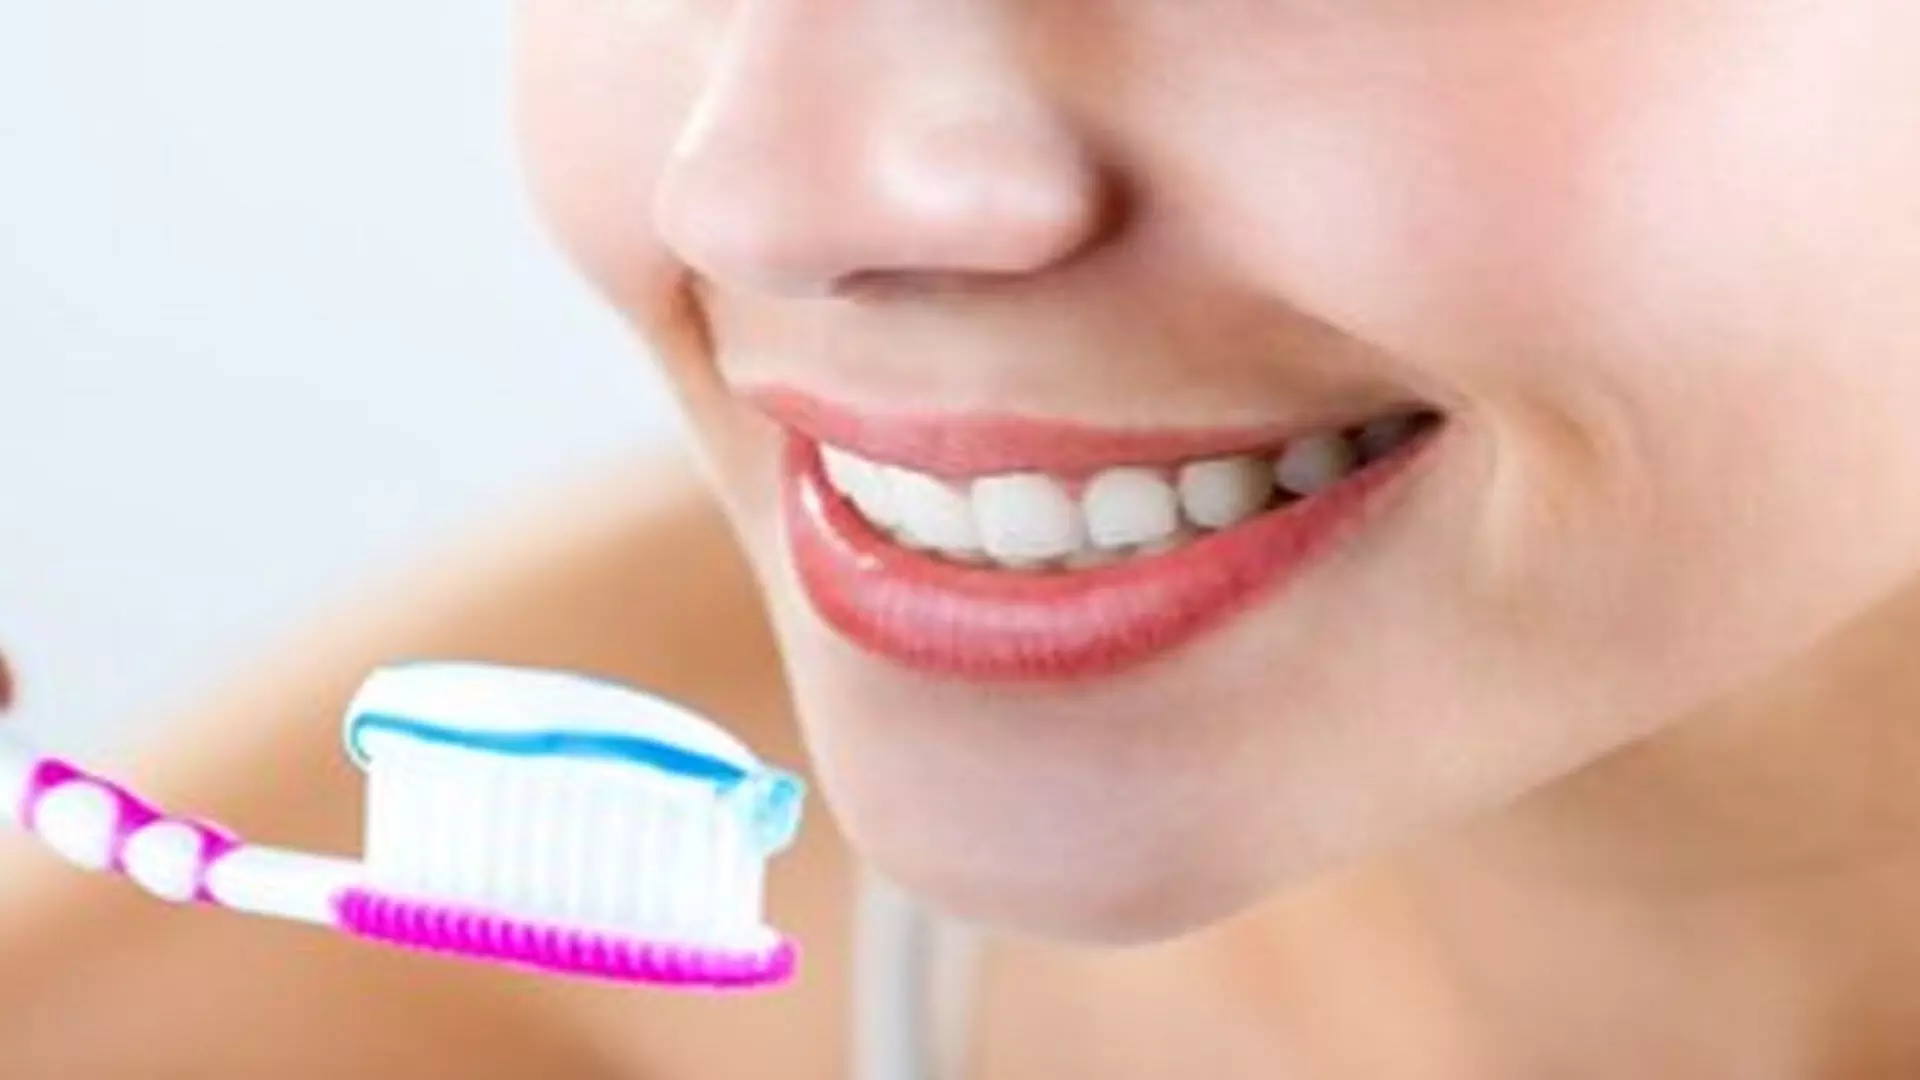 The right toothbrush:सही टूथब्रश का चुनाव बनेगी दांतों और मसूड़ों की सेहत